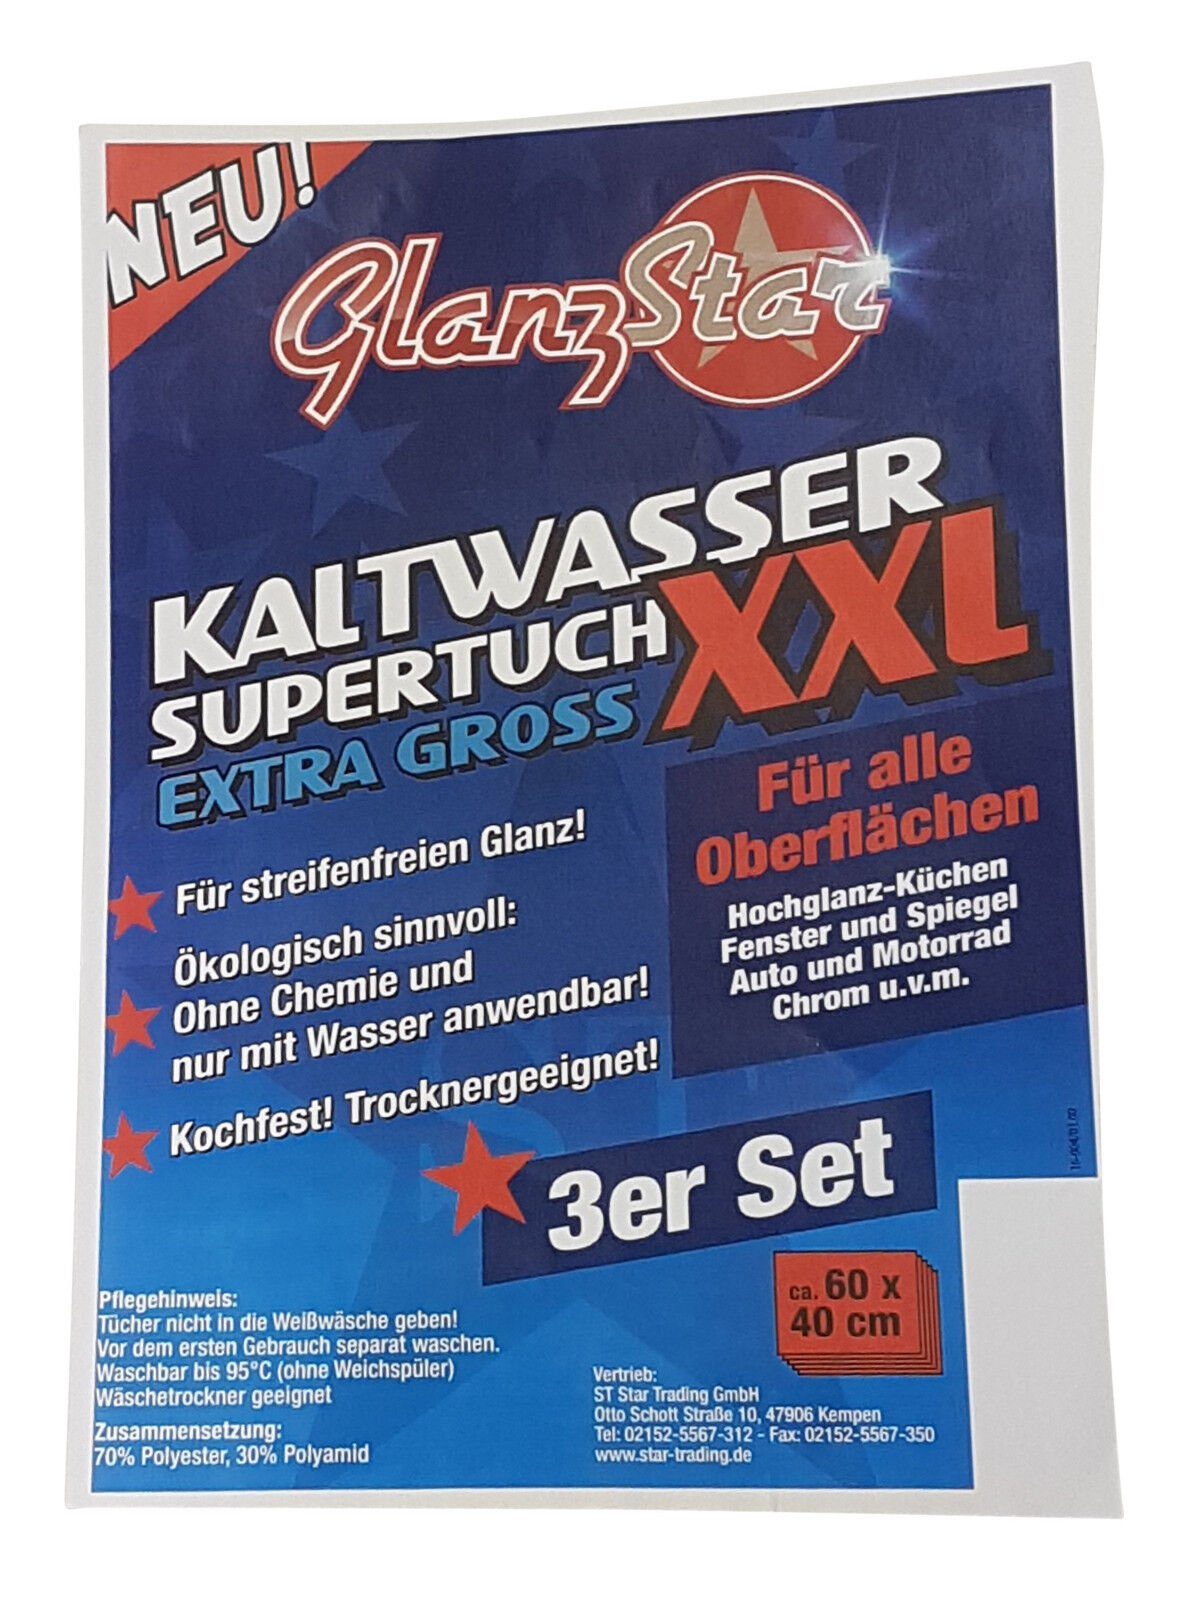 Glanzstar Kaltwasser Supertuch XXL 3er Set Mikrofasertuch (70% Polyester 30% Polyamid) | Mikrofasertücher